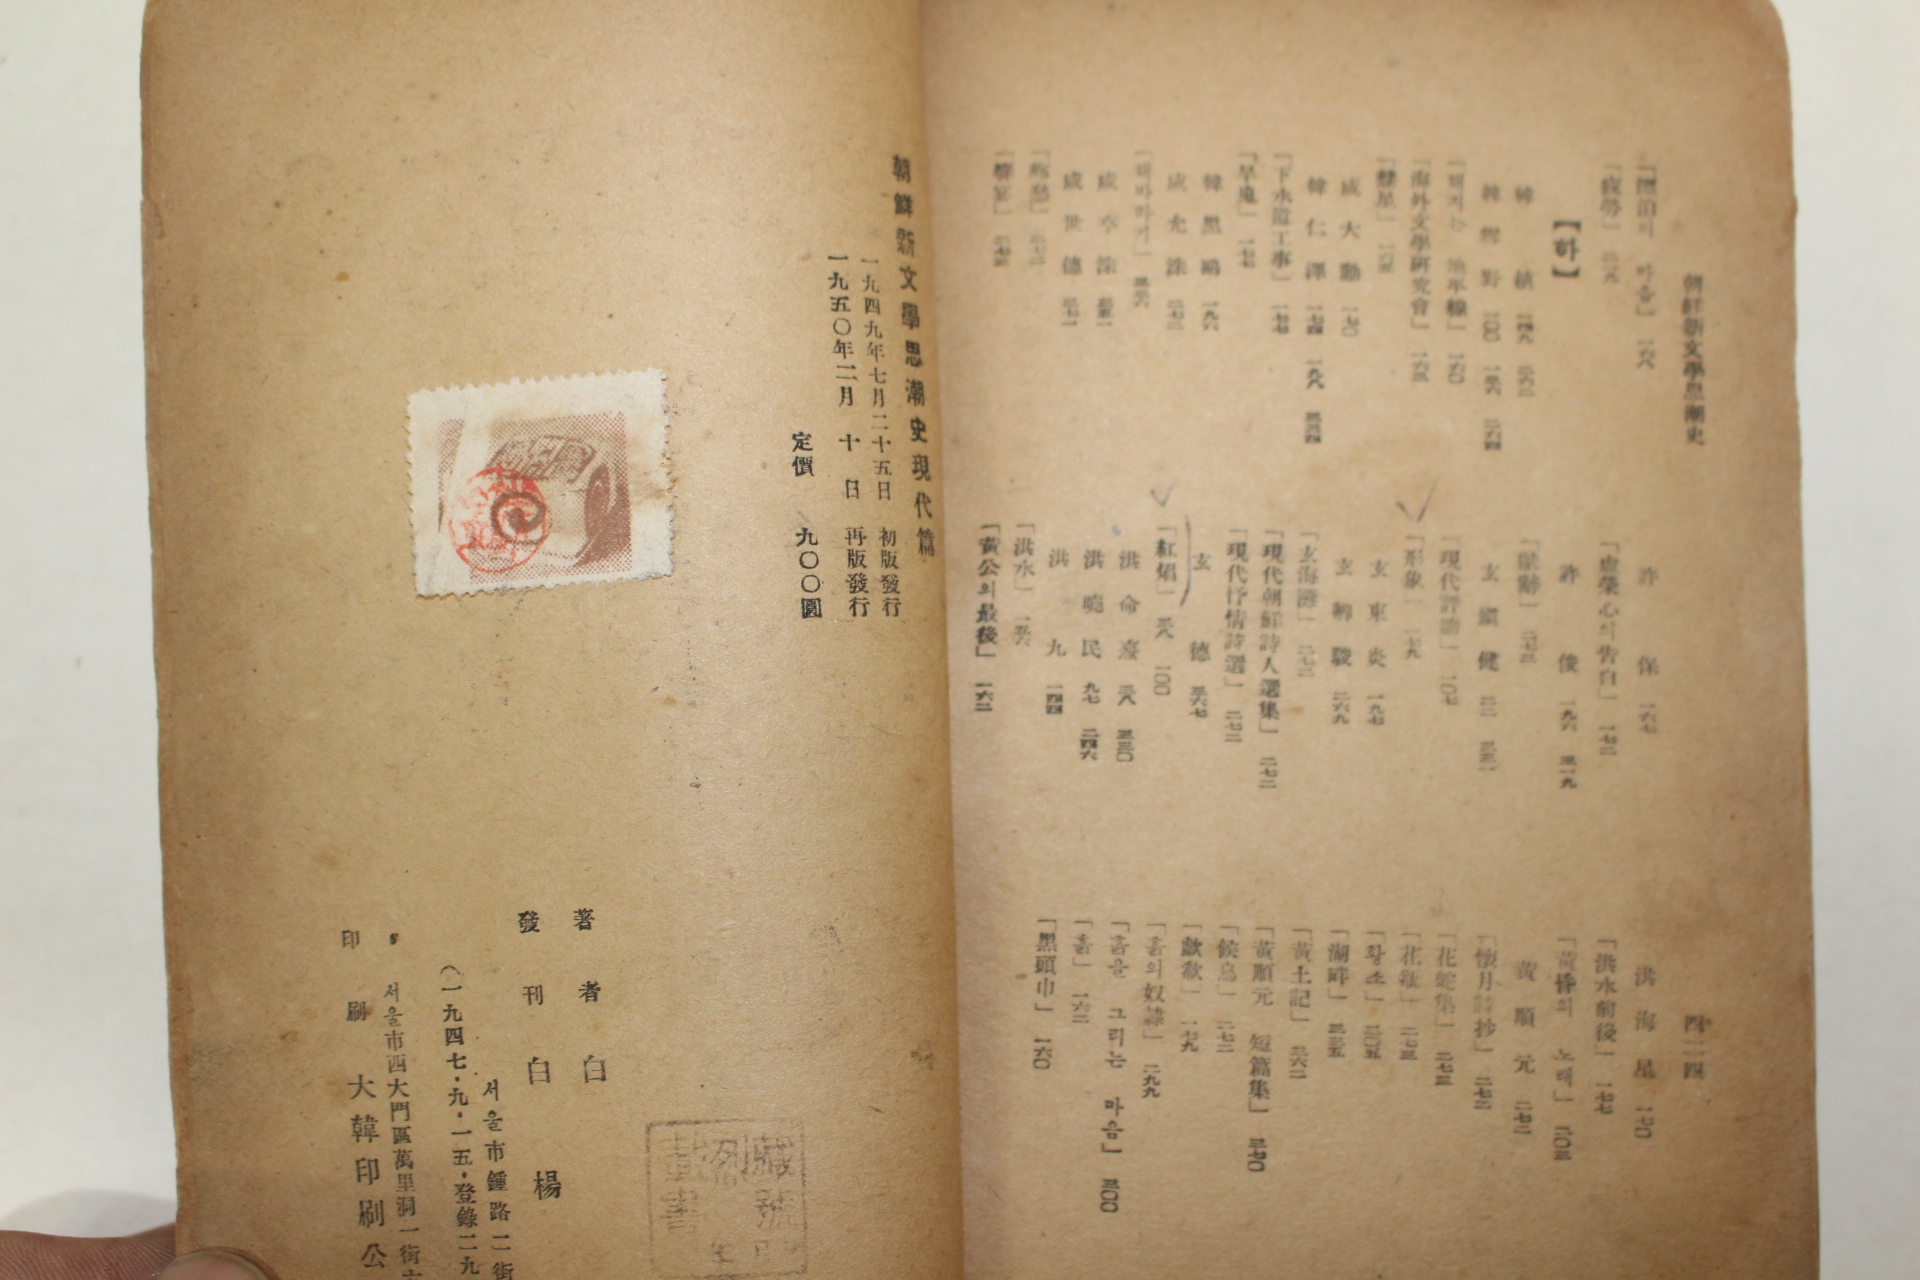 1950년재판간행 백철(白鐵) 조선신문학사조사(朝鮮新文學思潮史)